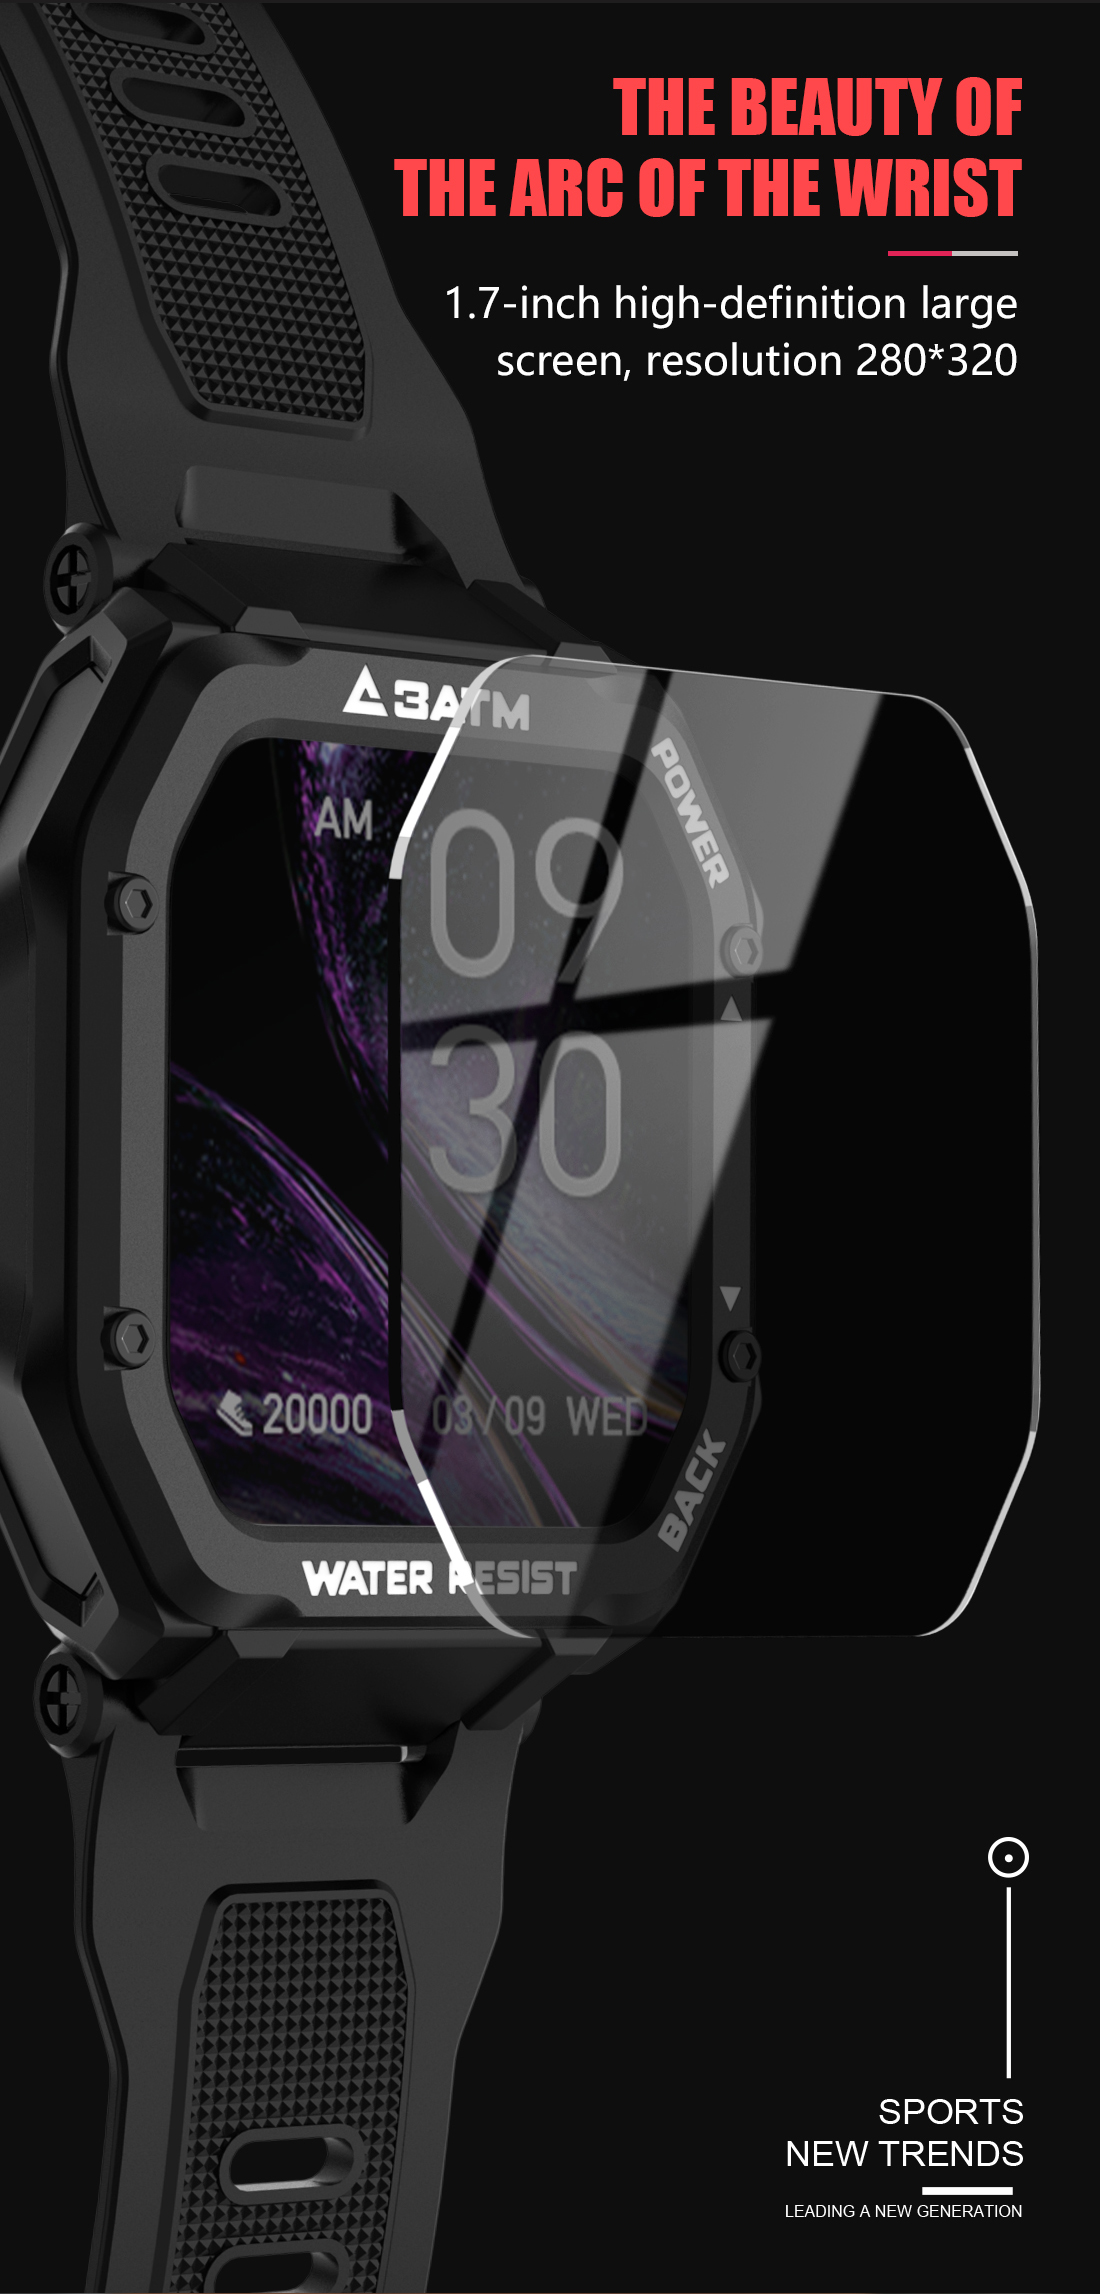 SENBONO 1.69 Inch 3ATM IP68 Waterproof Smart watch Men Women Fitness Tracker Blood Pressure Monitor Outdoor Sports Smartwatch